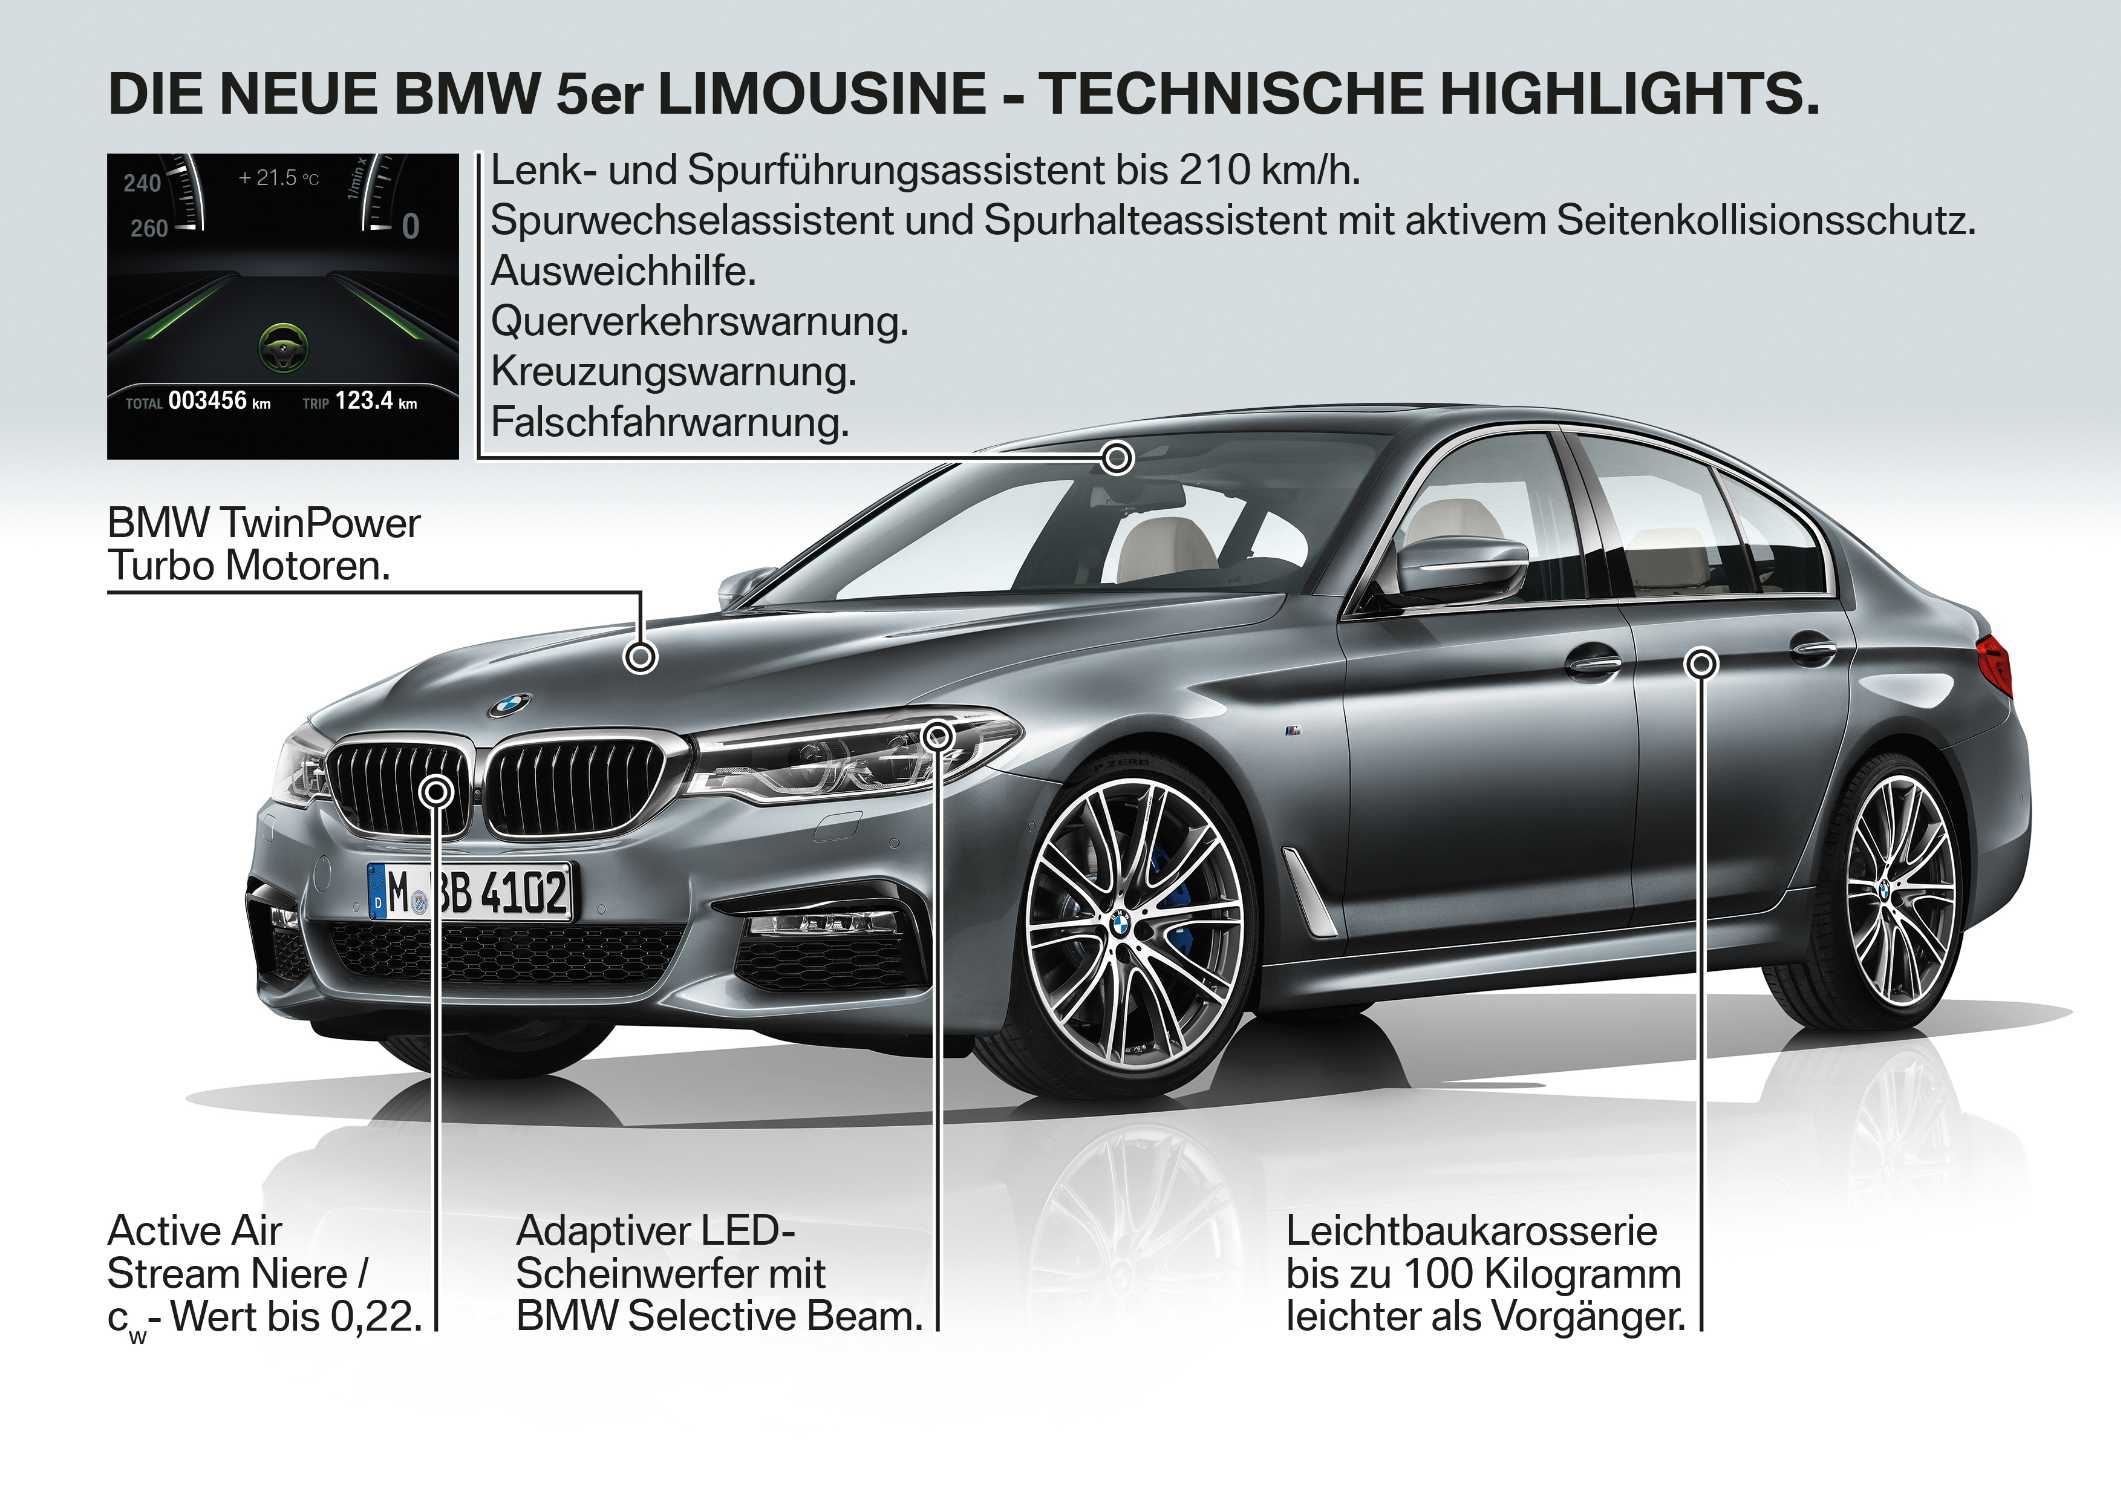 Die neue BMW 5er Limousine (10/2016).